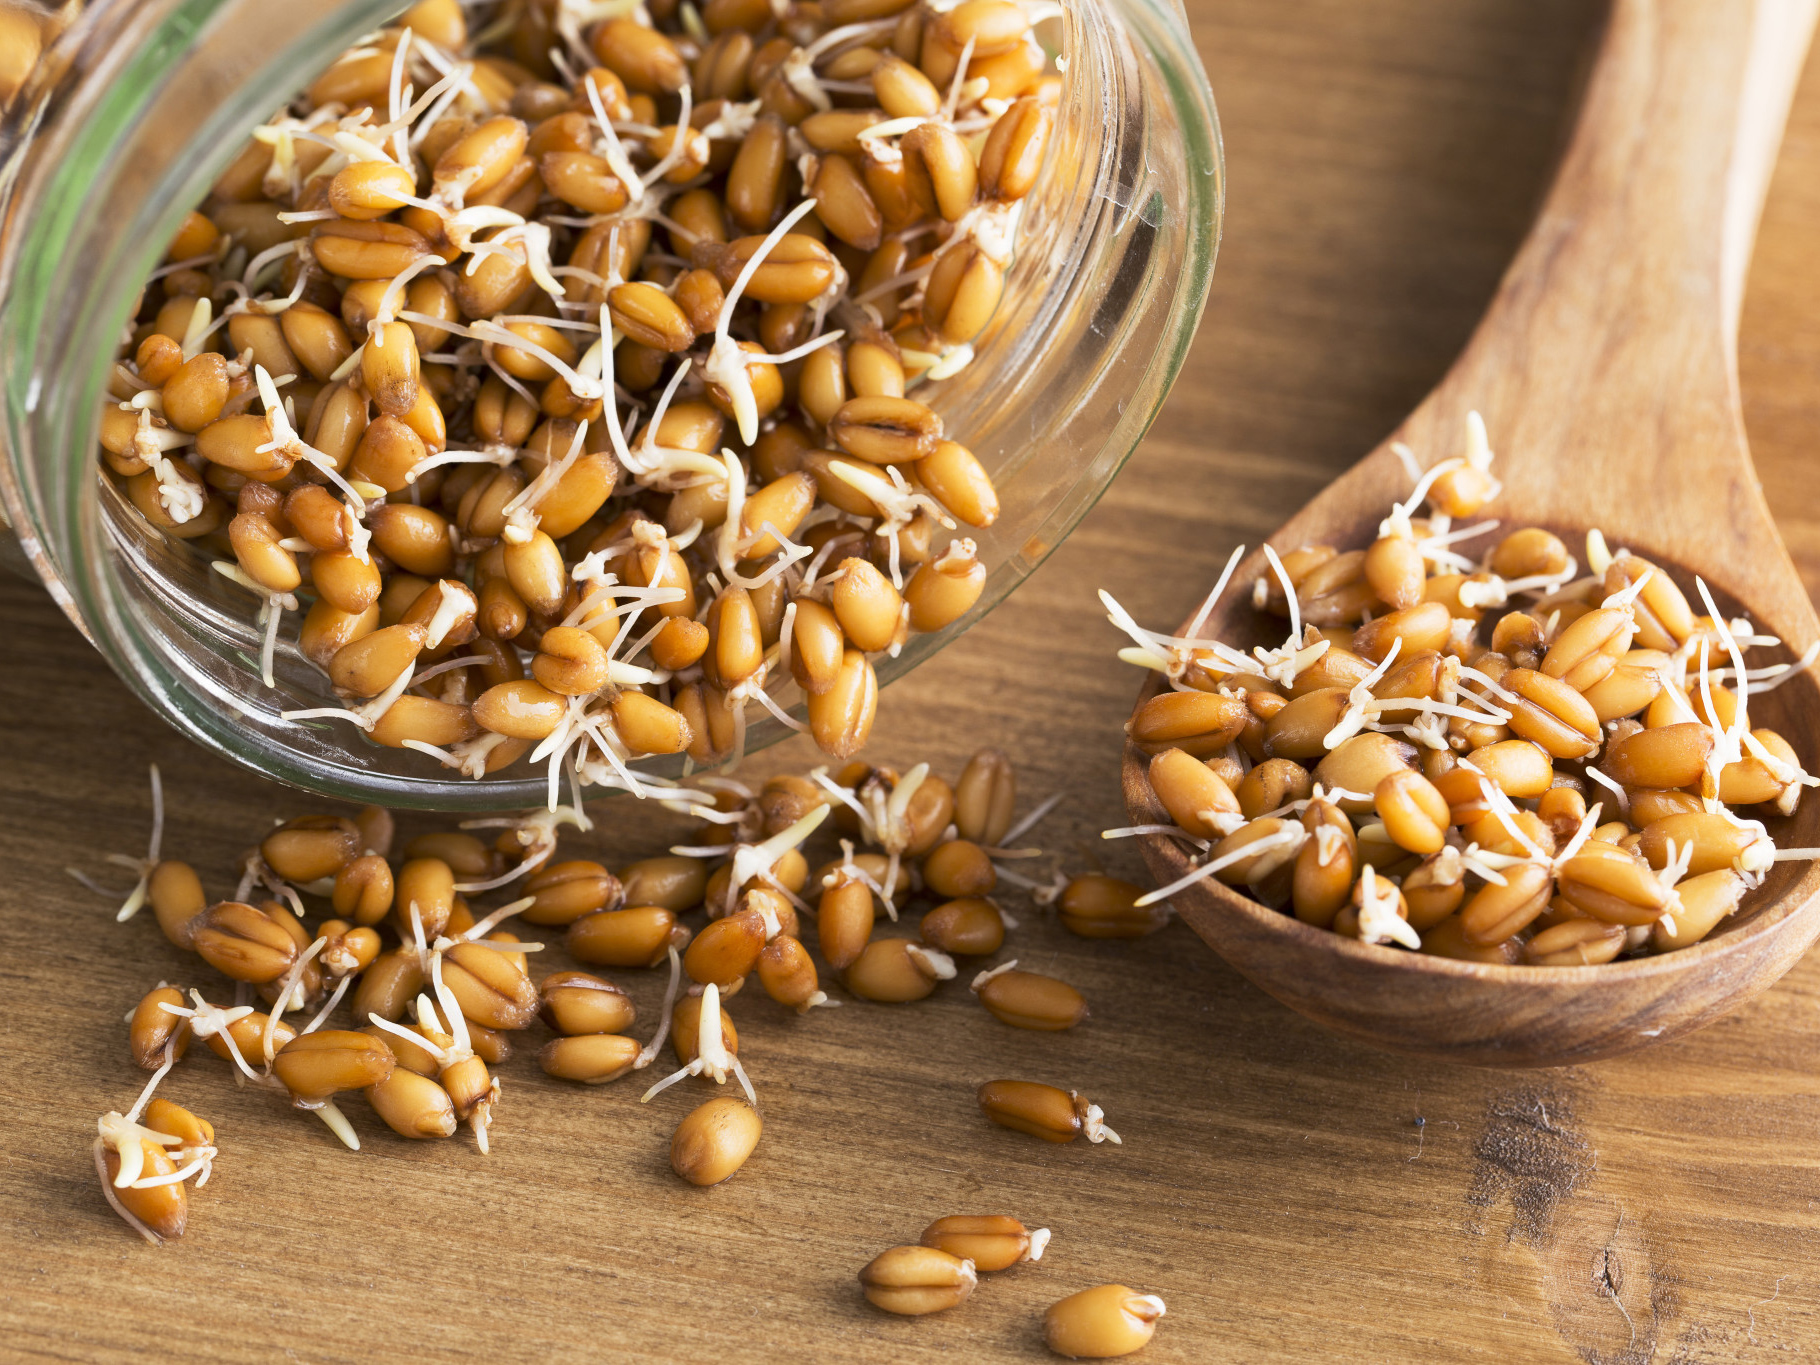 Полезные свойства пророщенной пшеницы